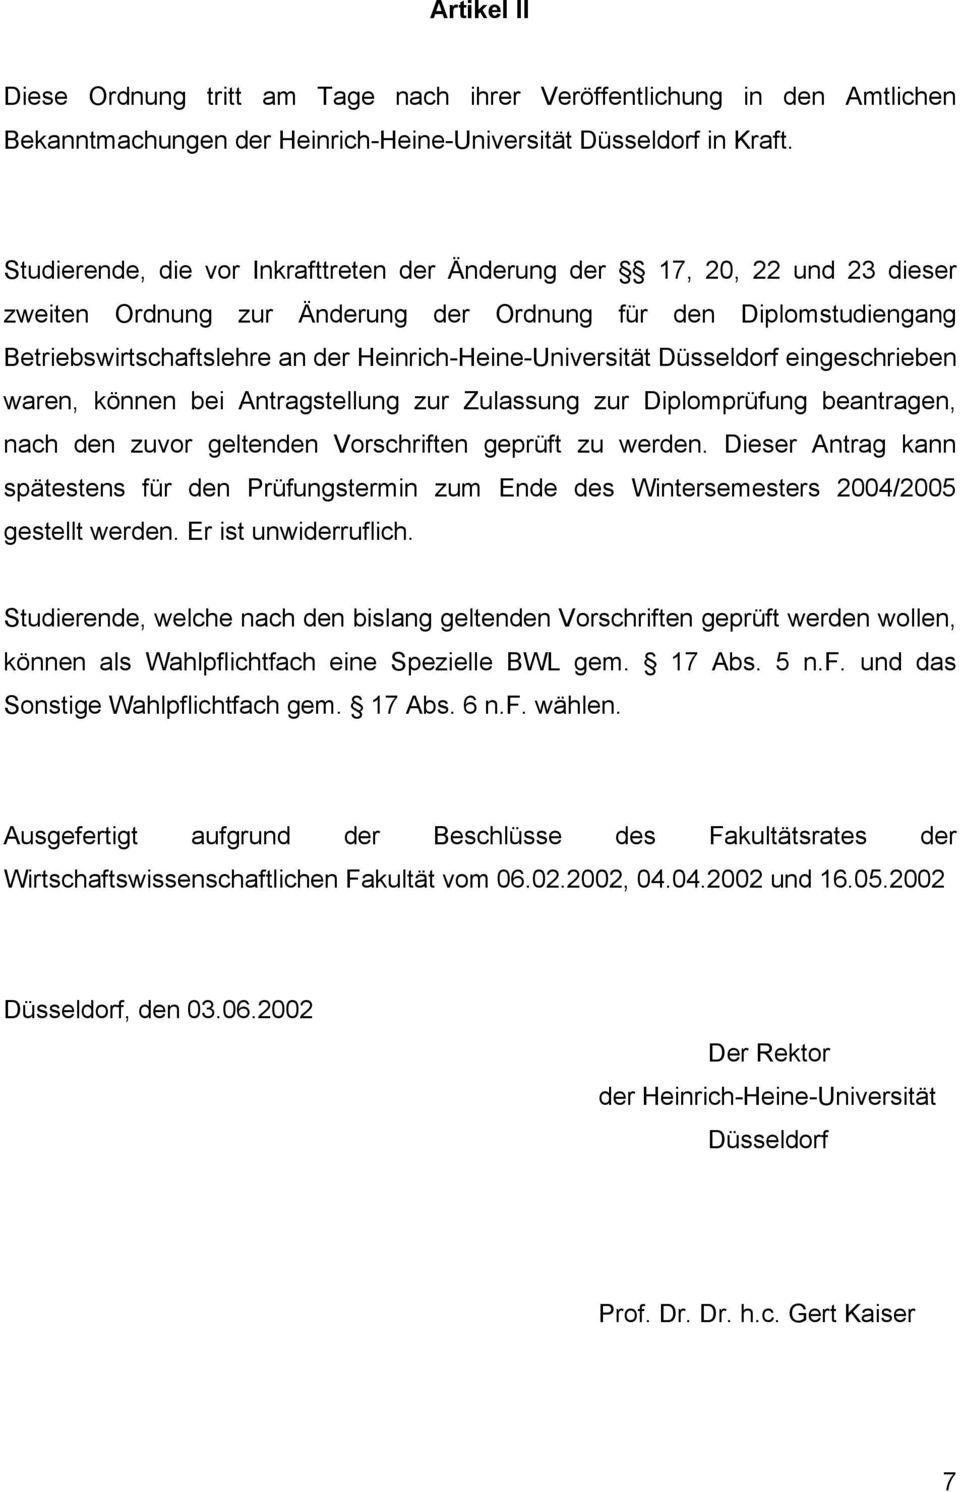 Heinrich-Heine-Universität Düsseldrf eingeschrieben waren, können bei Antragstellung zur Zulassung zur Diplmprüfung beantragen, nach den zuvr geltenden Vrschriften geprüft zu werden.